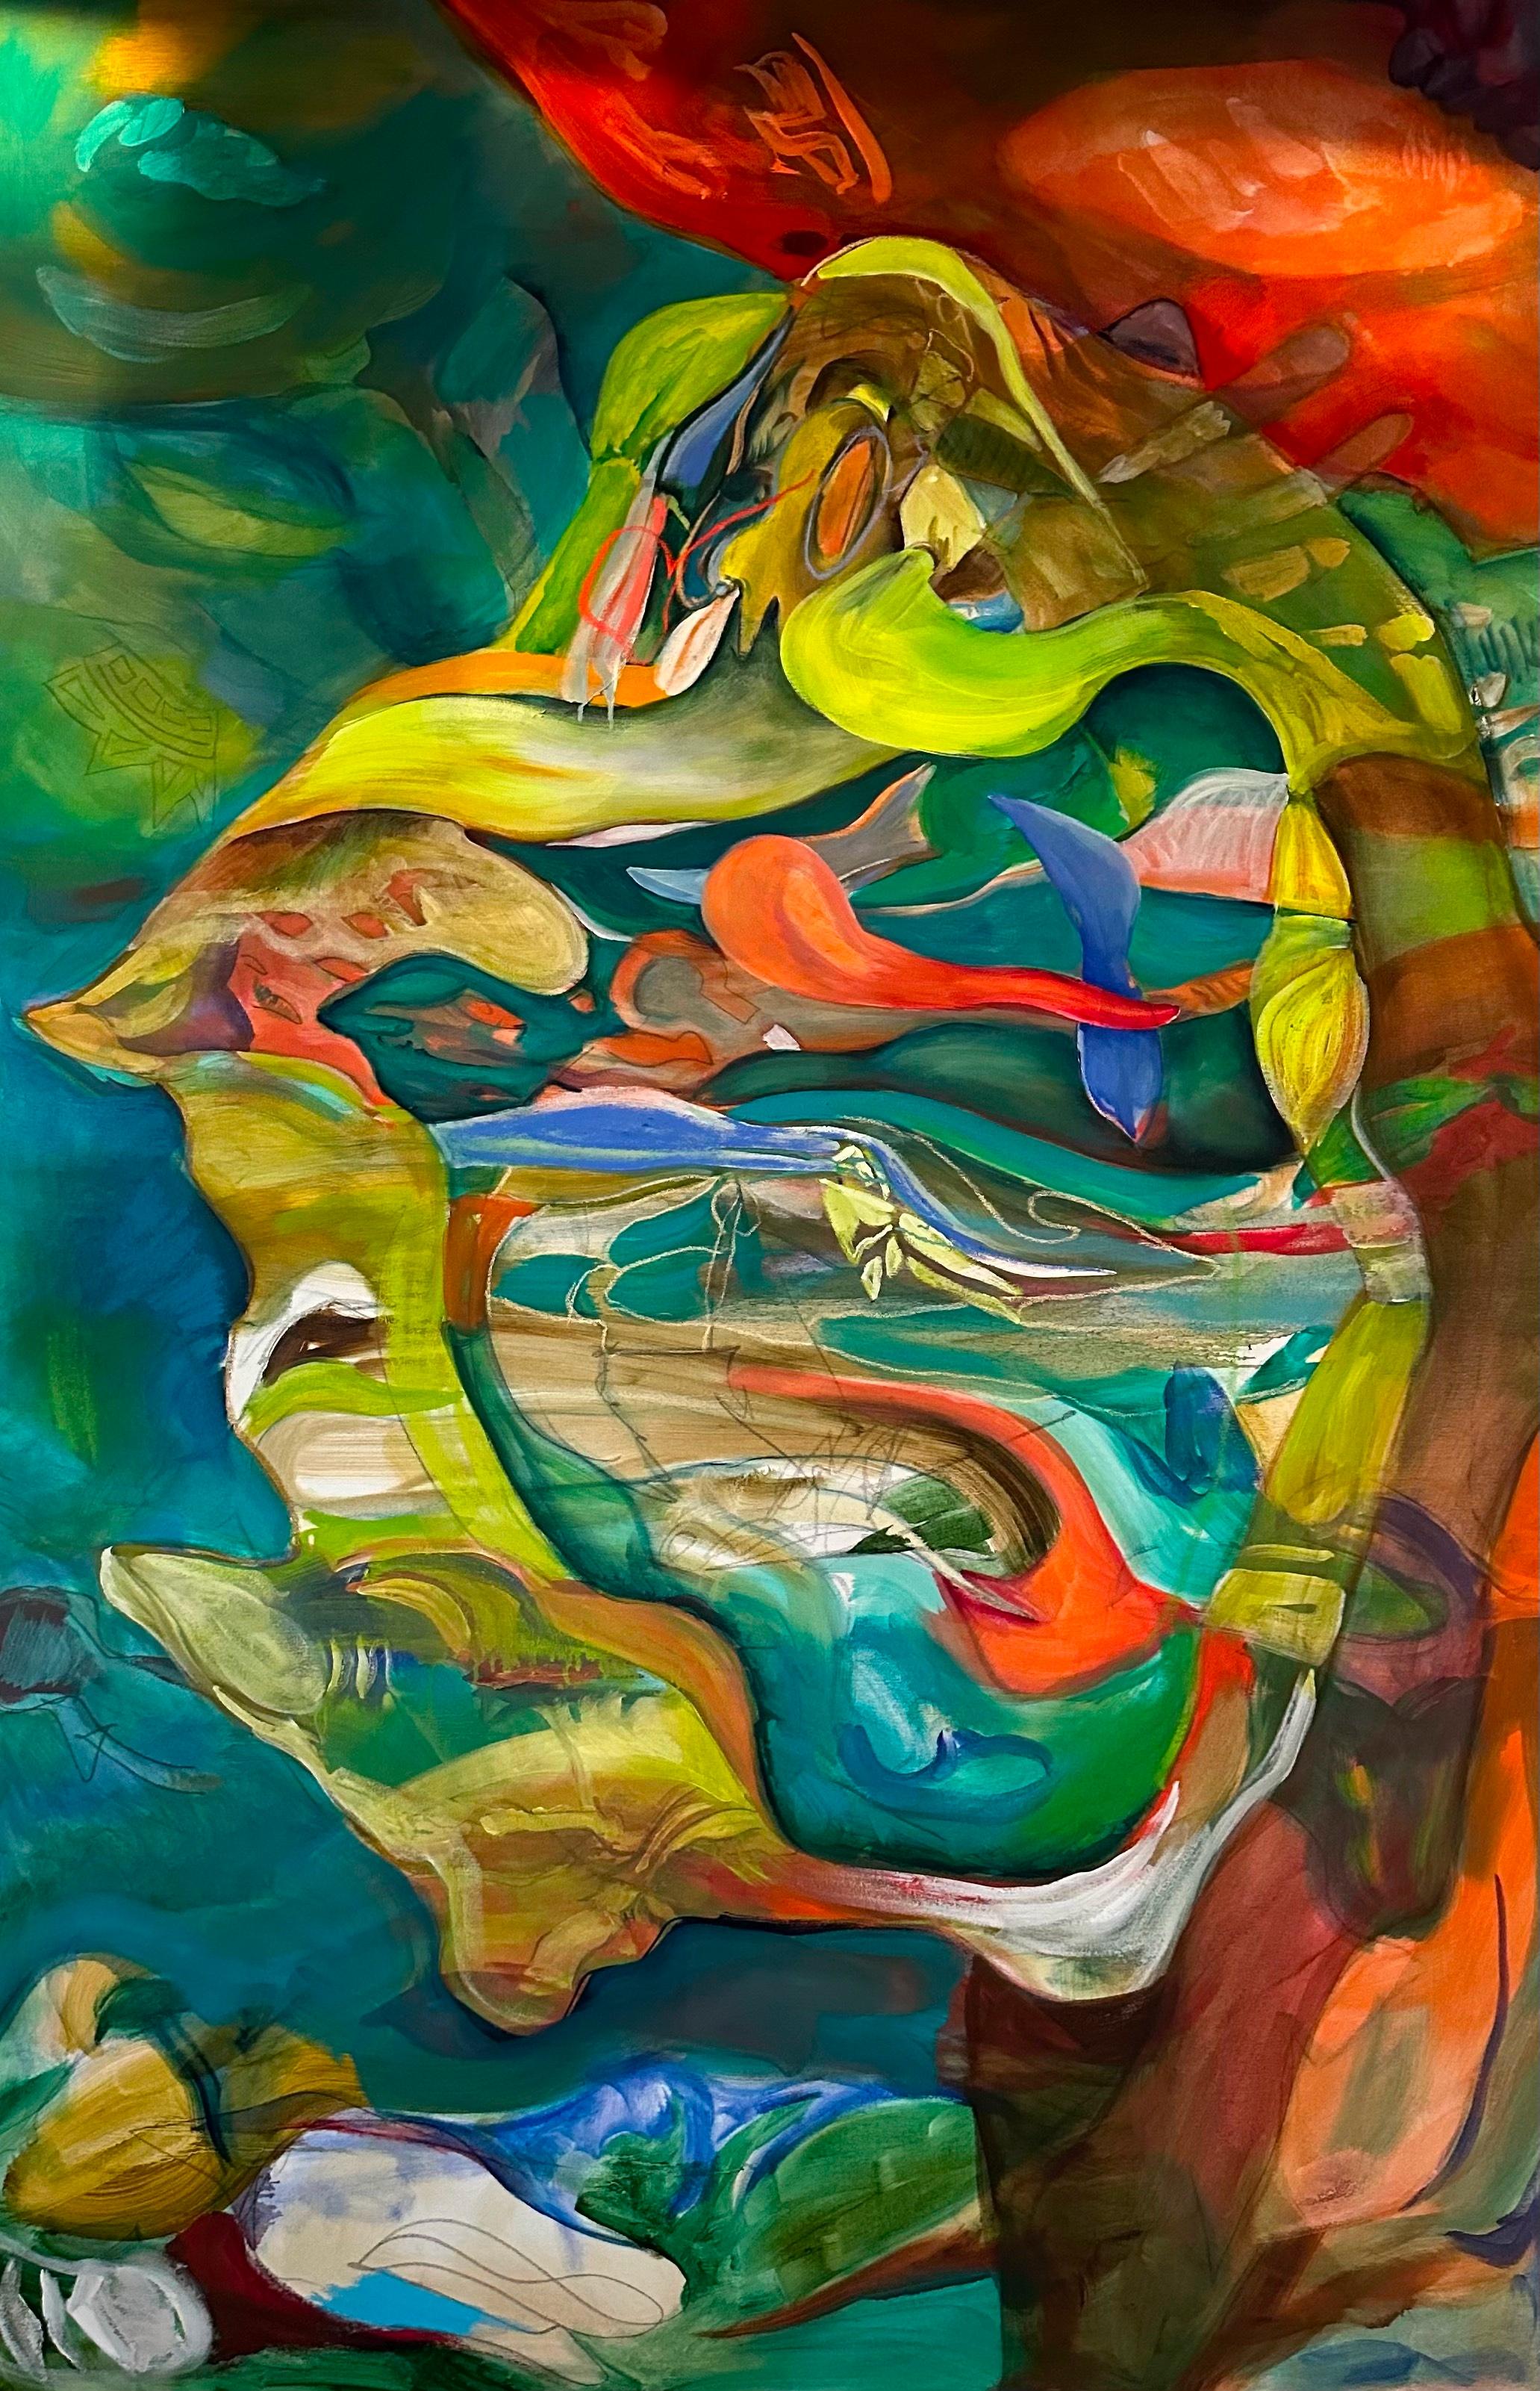 Portal III - Painting by Janice Freeman